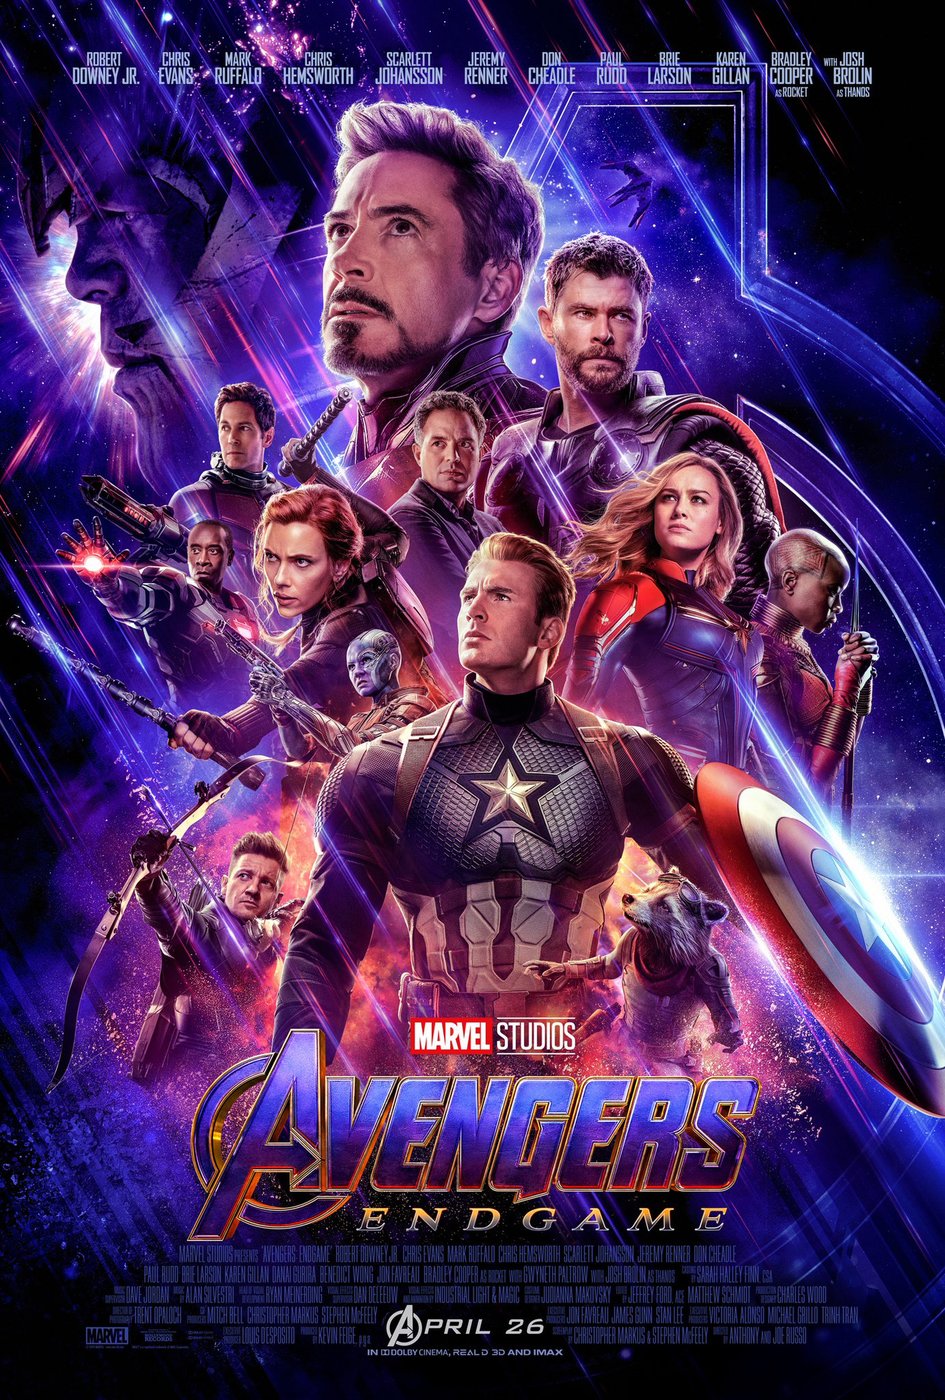 Avengers Endgame official poster